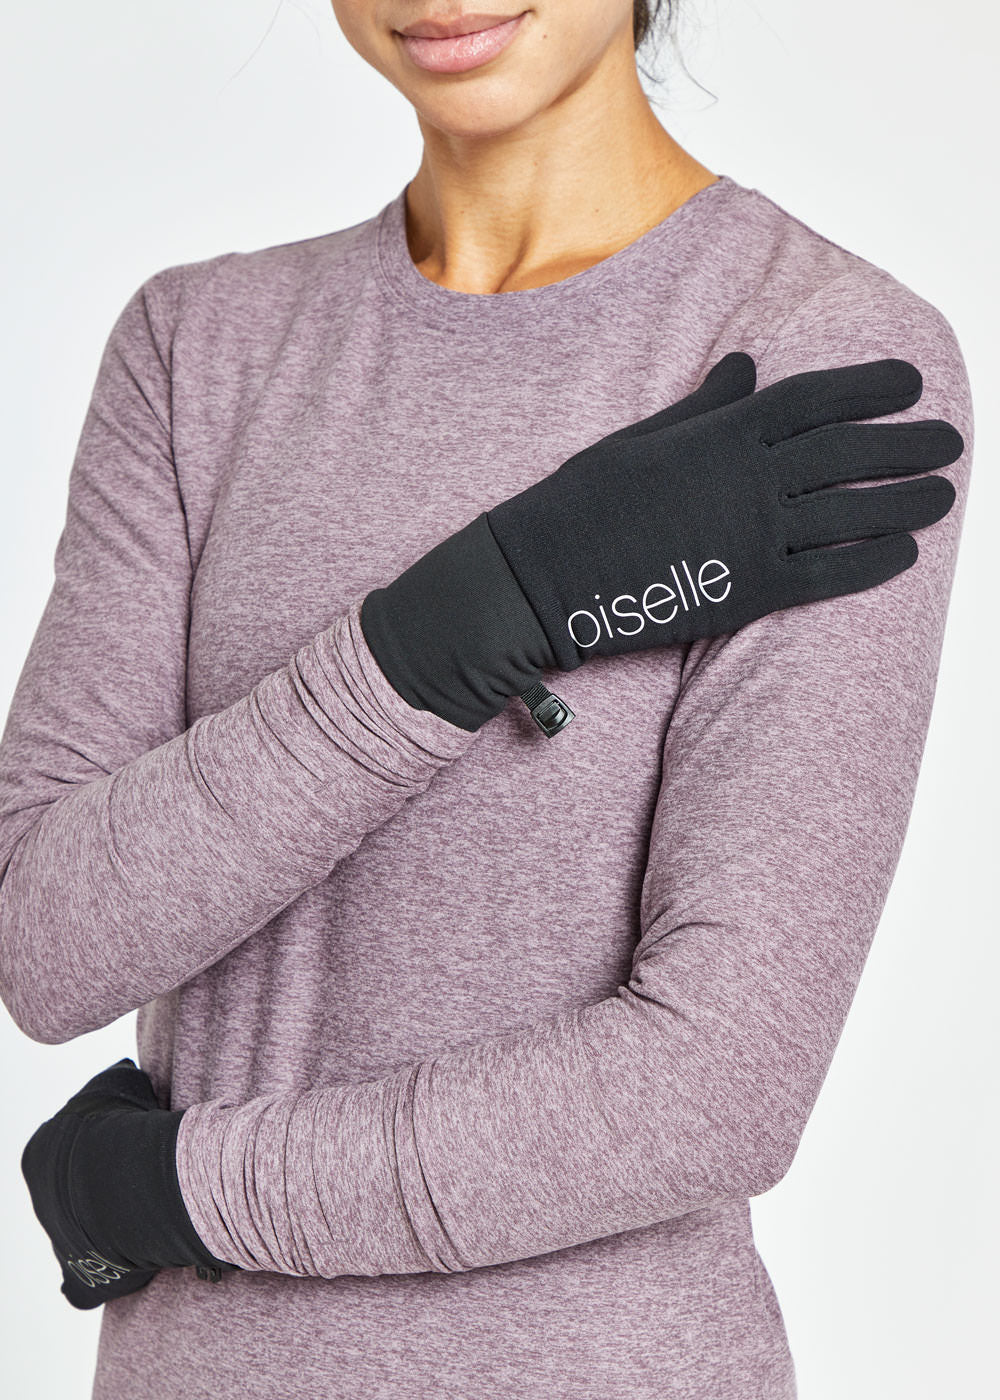 Oiselle Women's Power Move Running Gloves